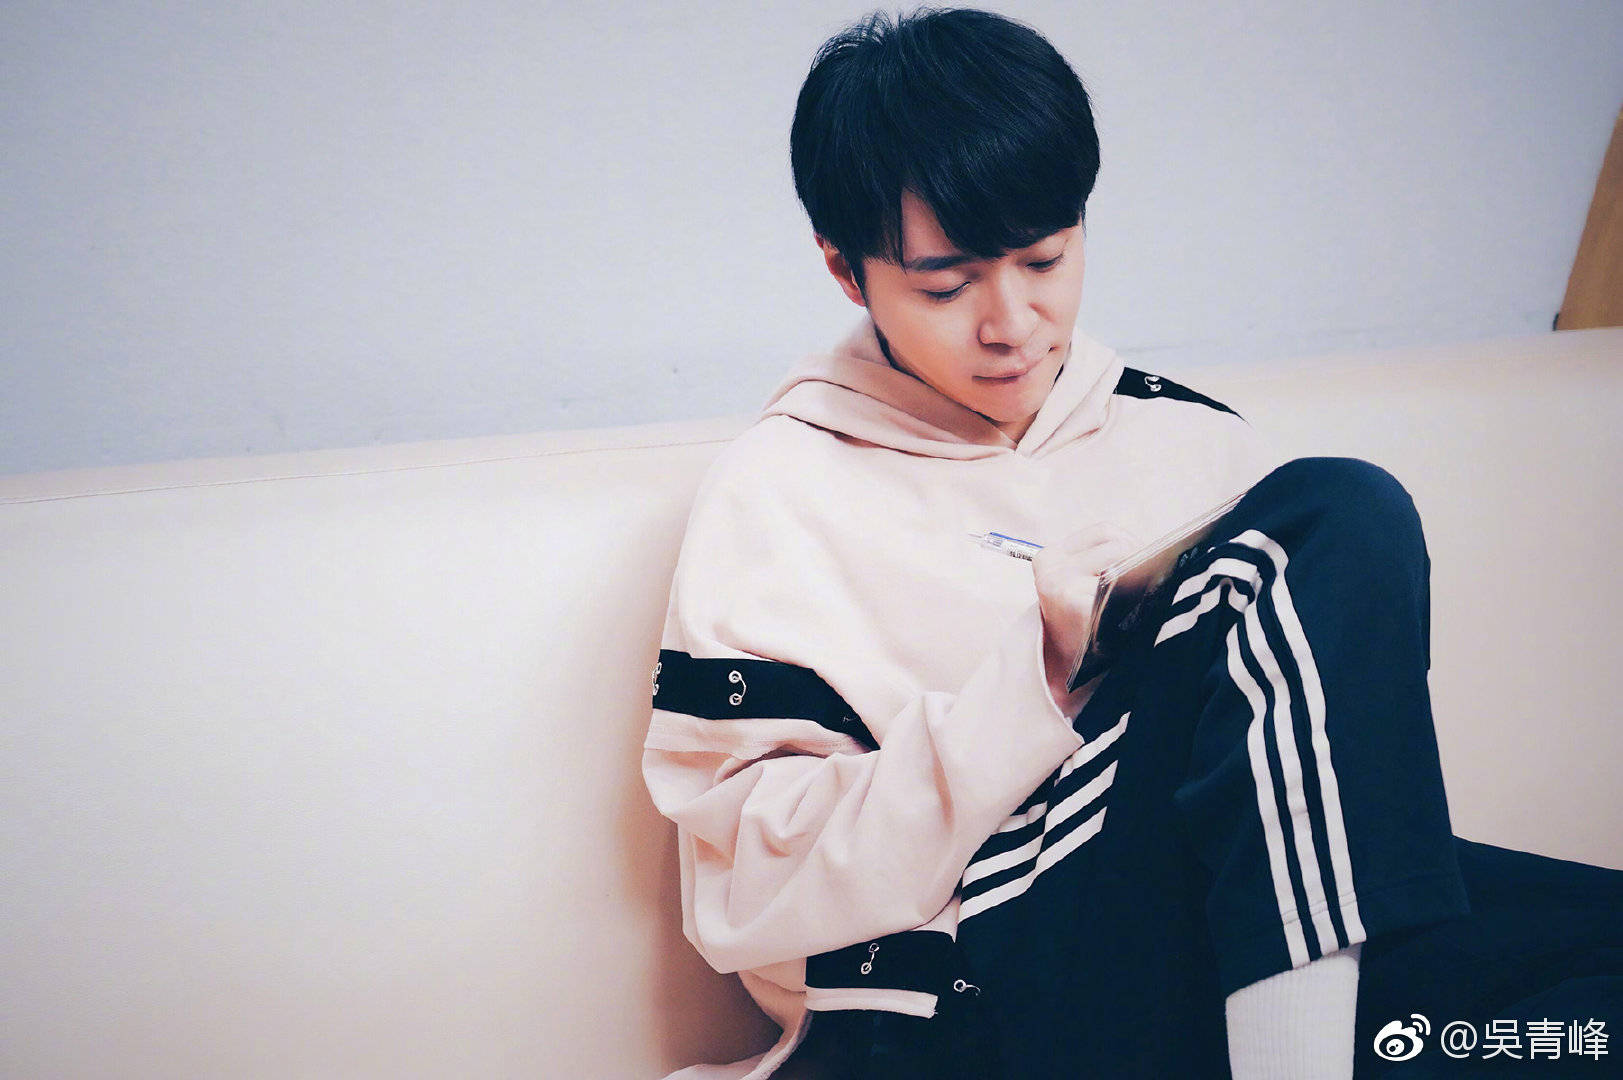 歌手2019:吴青峰《燕窝》讲述自己的故事 